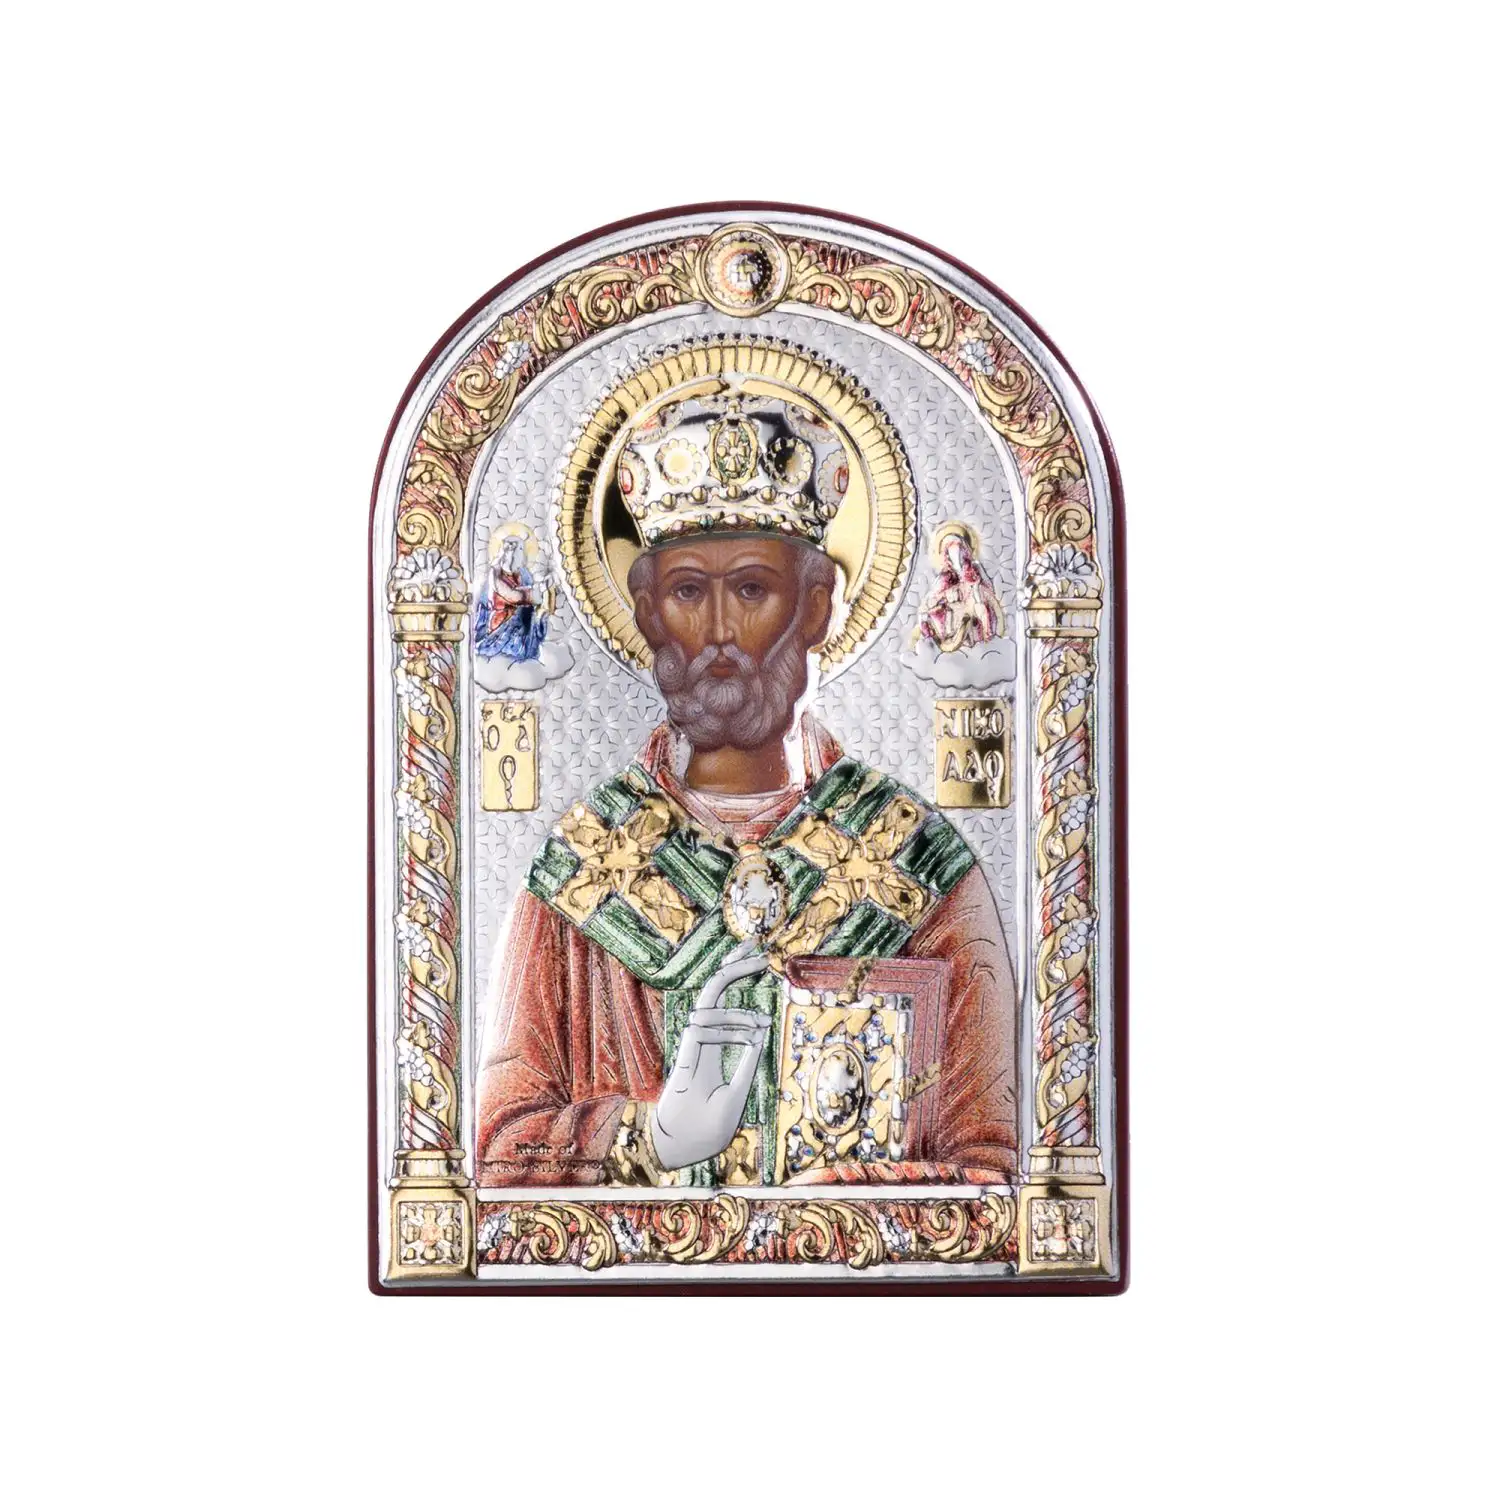 Икона Святой Николай Чудотворец (6*8.5) икона николай чудотворец 12х11 5 нч 761 прямая печать по левкасу золочение